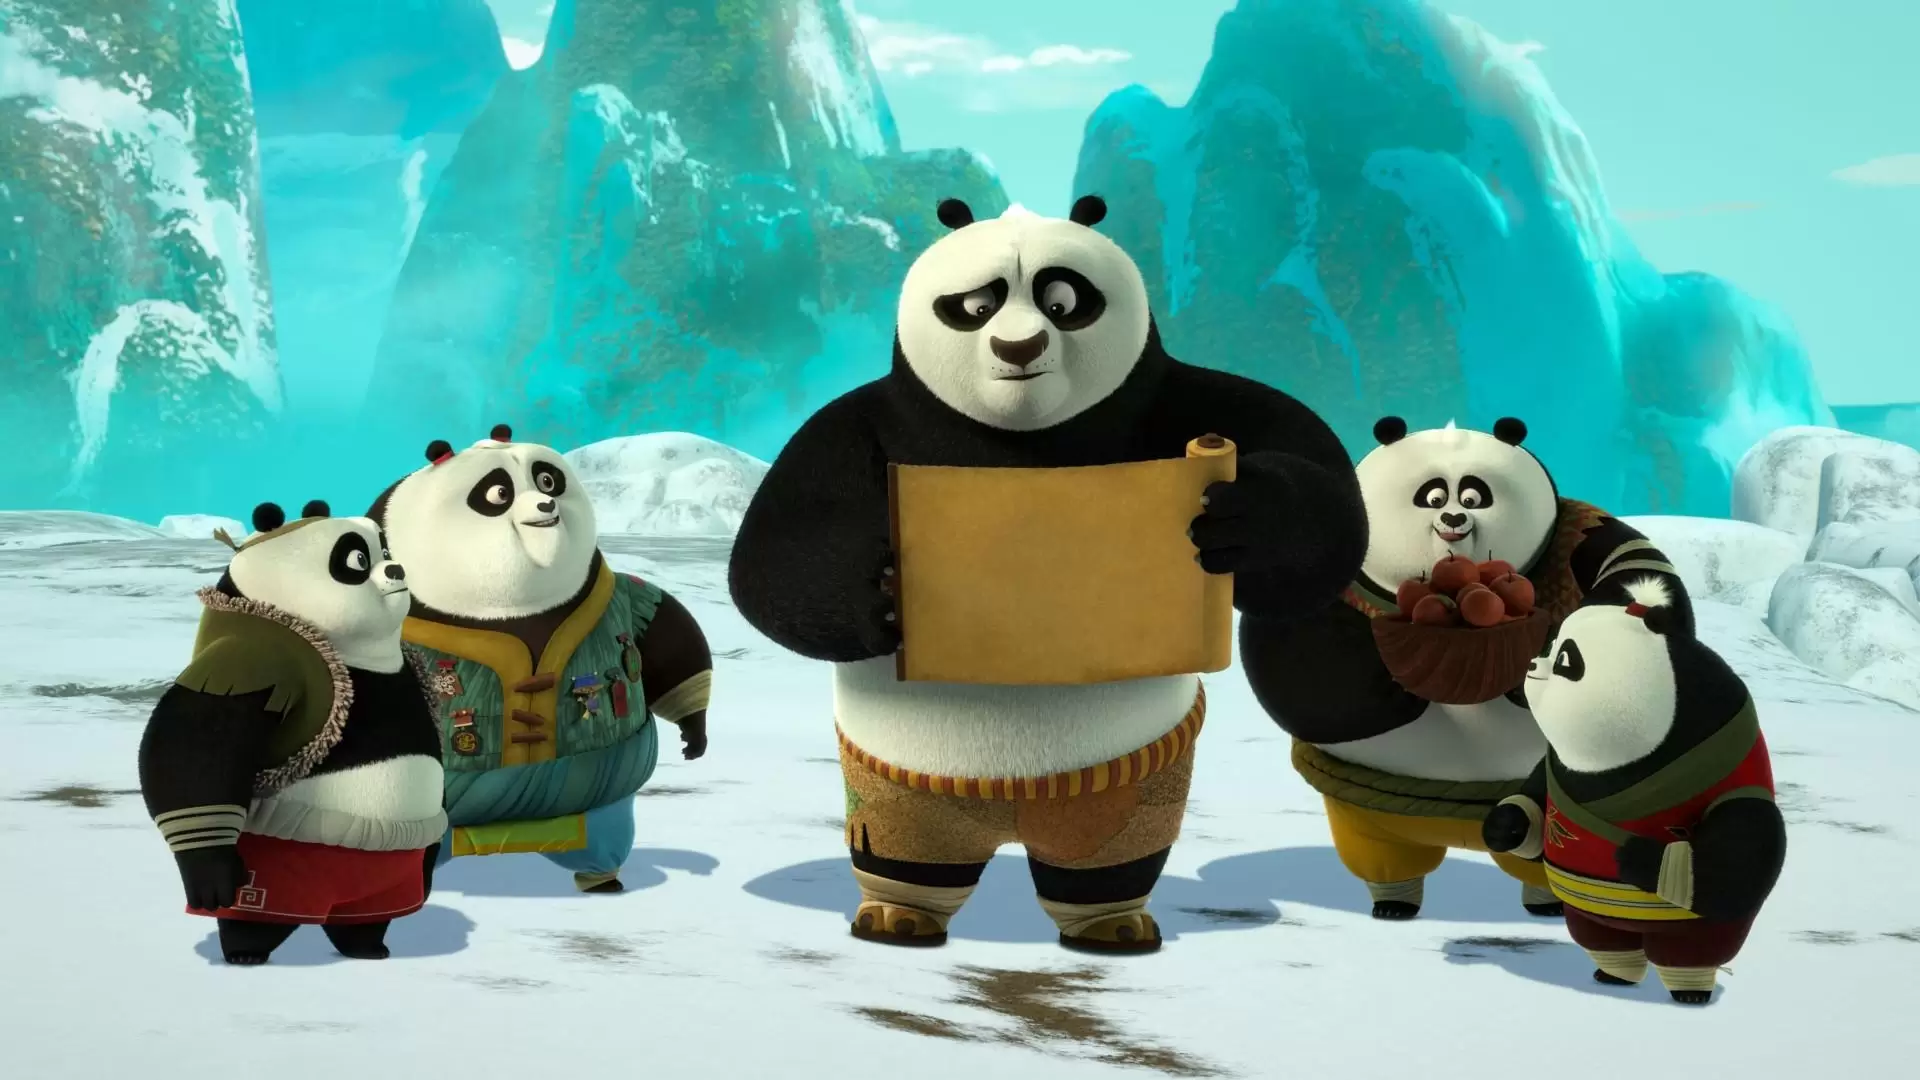 دانلود انیمیشن Kung Fu Panda: The Paws of Destiny 2018 (پاندای کونگ فو کار :پنجه های سرنوشت) با زیرنویس فارسی